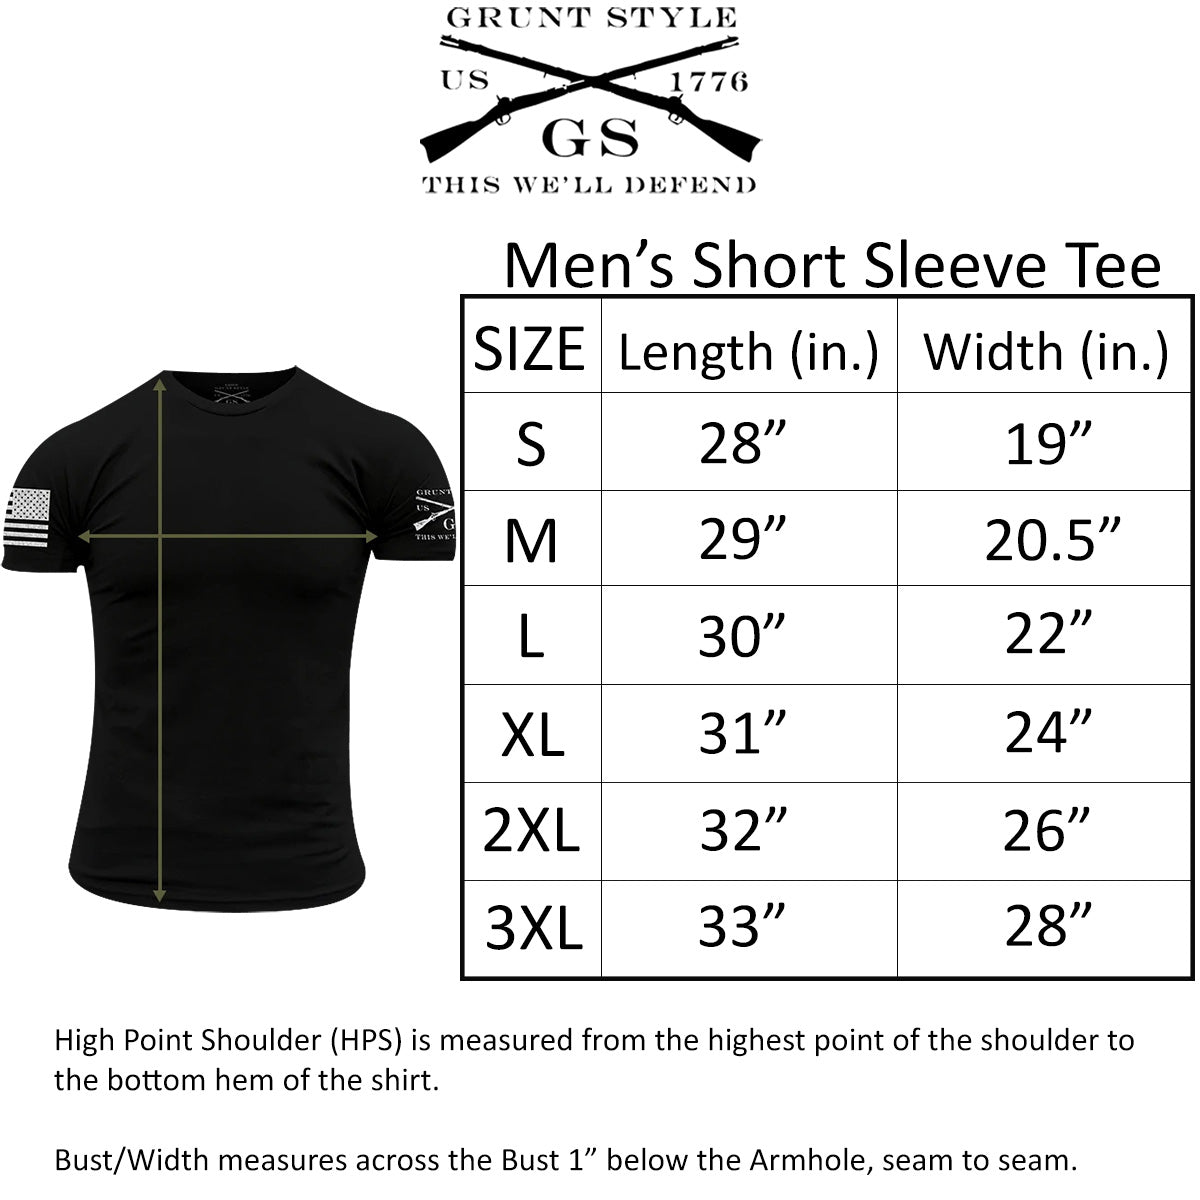 Grunt Style USMC - Eagle Globe & Anchor Basic II T-Shirt - Black Grunt Style